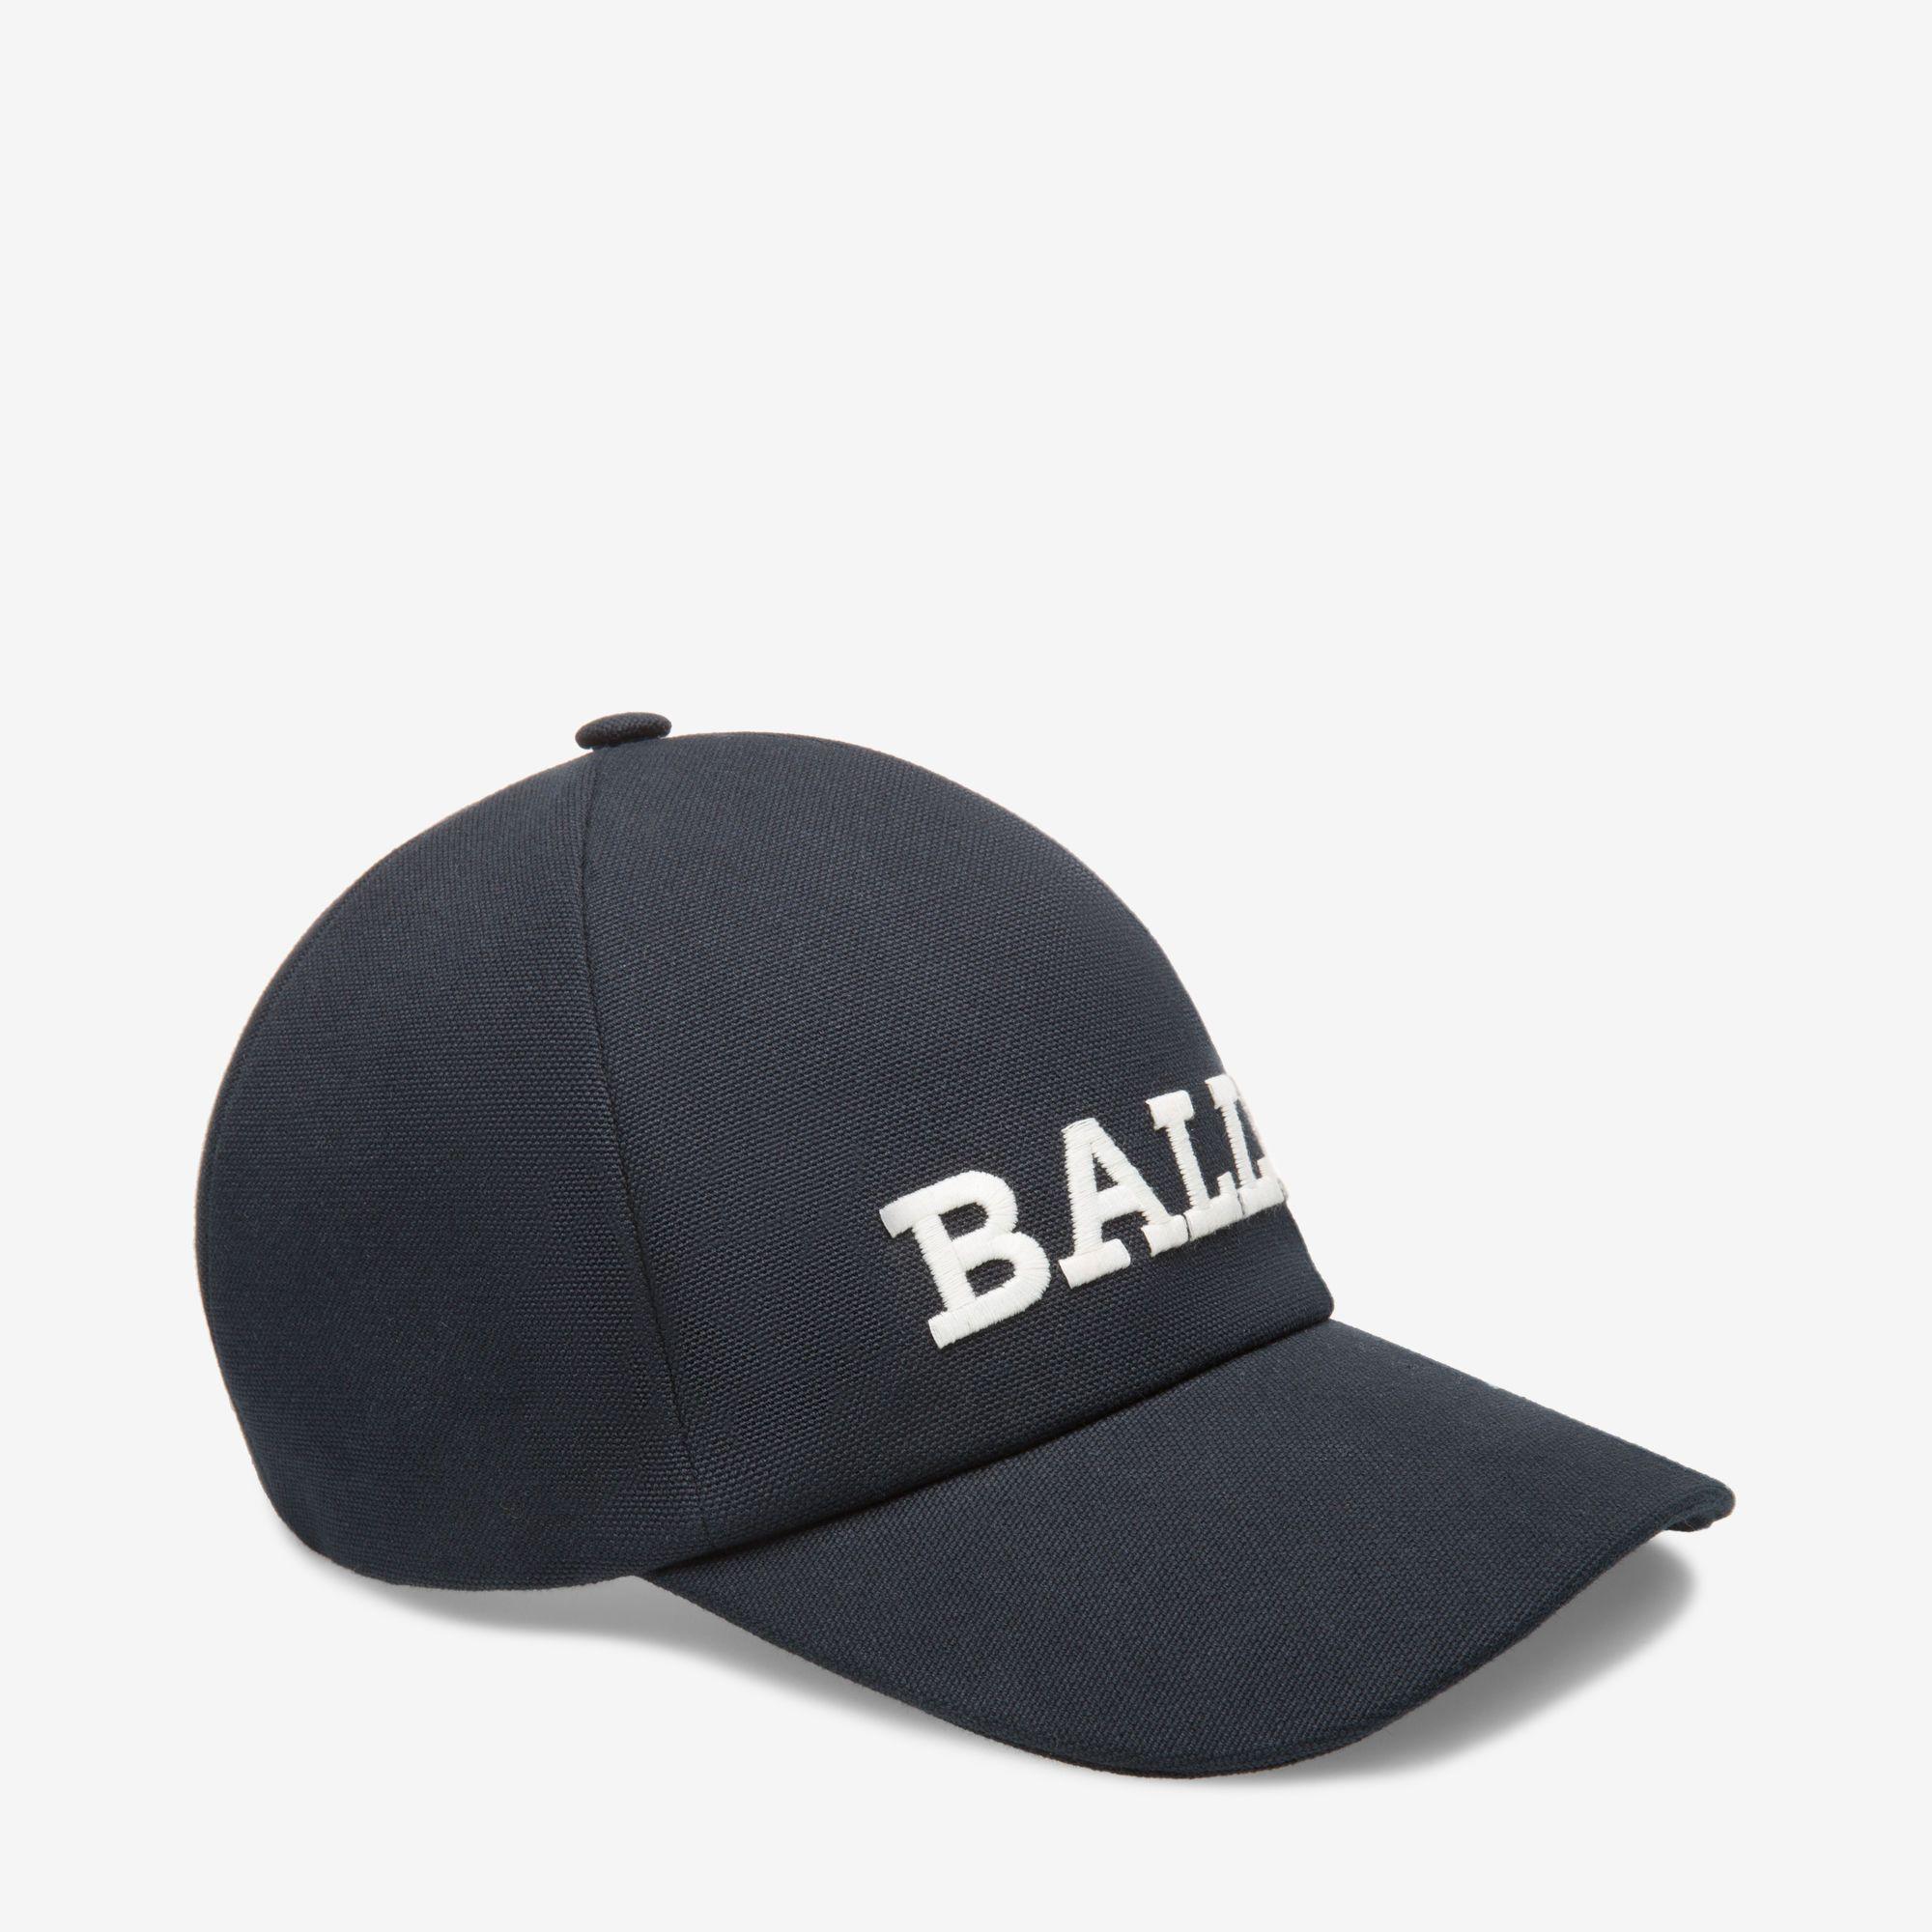 Bally Clothing Logo - Logo Baseball Cap| Men's Hats | Bally